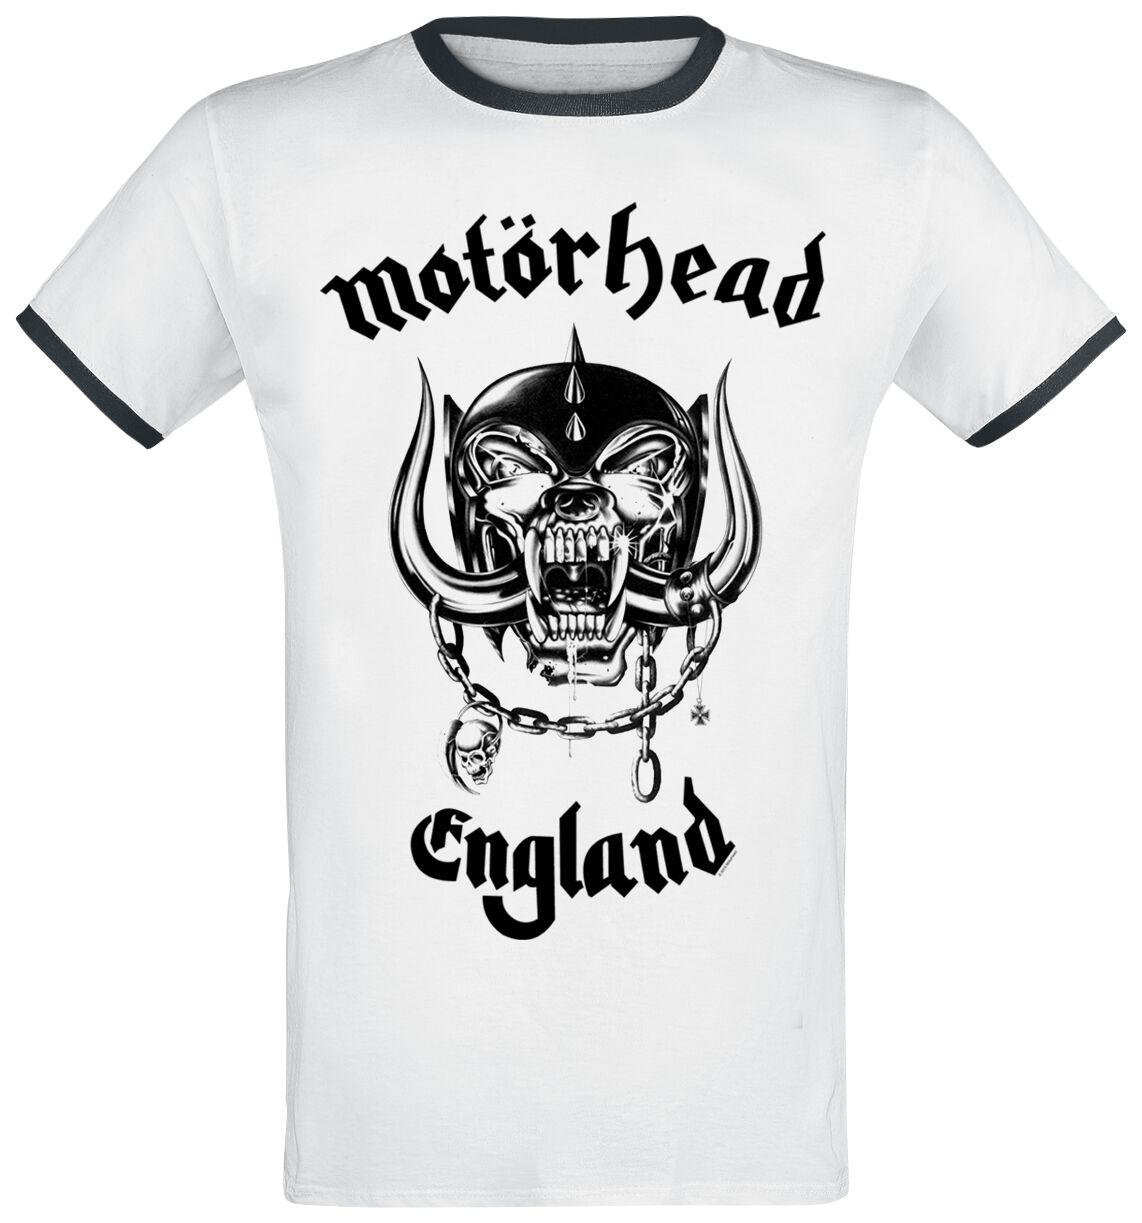 Motörhead T-Shirt - England - S bis 3XL - für Männer - Größe S - weiß  - Lizenziertes Merchandise!